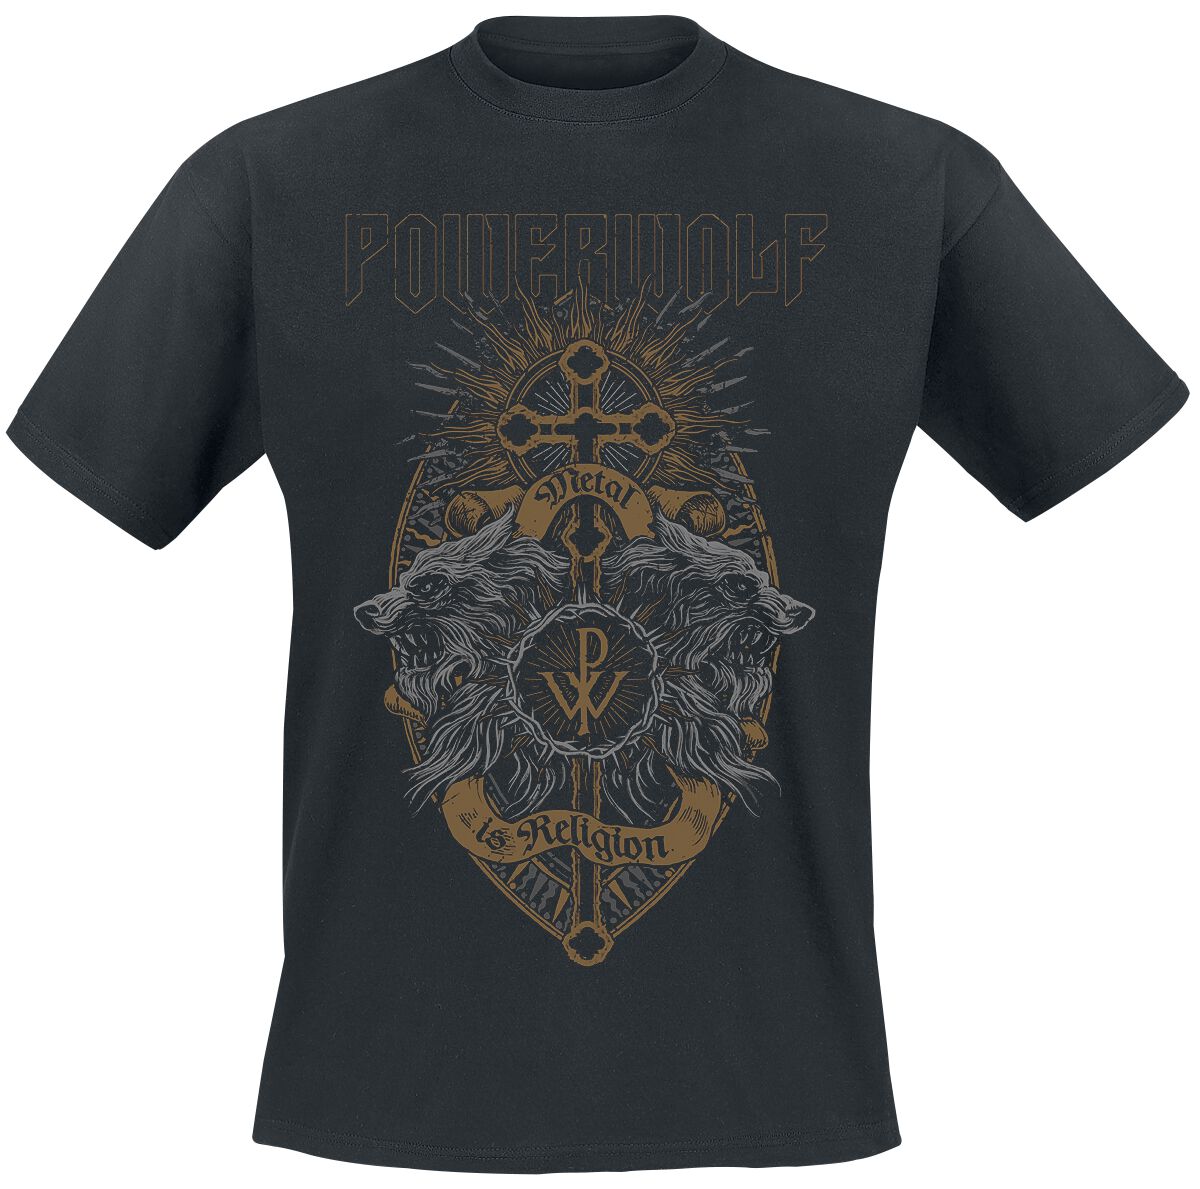 Powerwolf T-Shirt - Crest Wolves - S bis XL - für Männer - Größe M - schwarz  - Lizenziertes Merchandise!